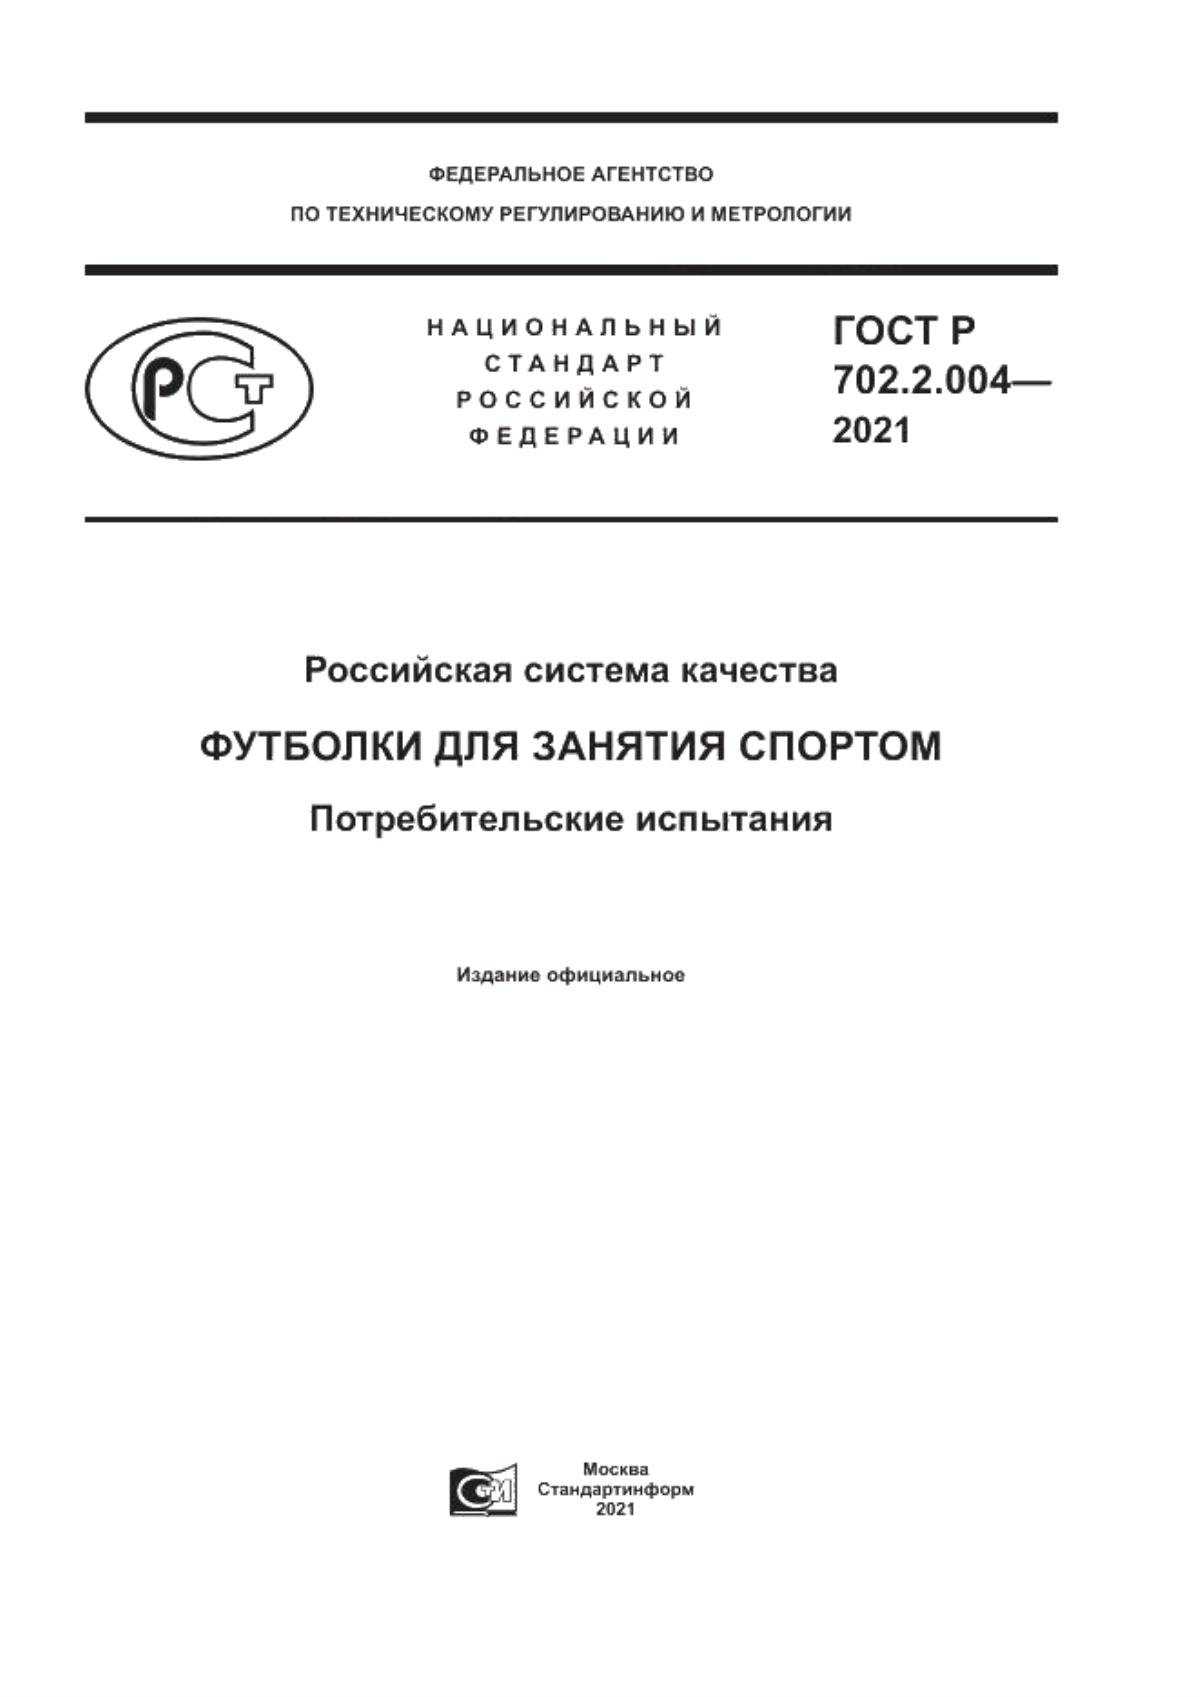 ГОСТ Р 702.2.004-2021 Российская система качества. Футболки для занятия спортом. Потребительские испытания